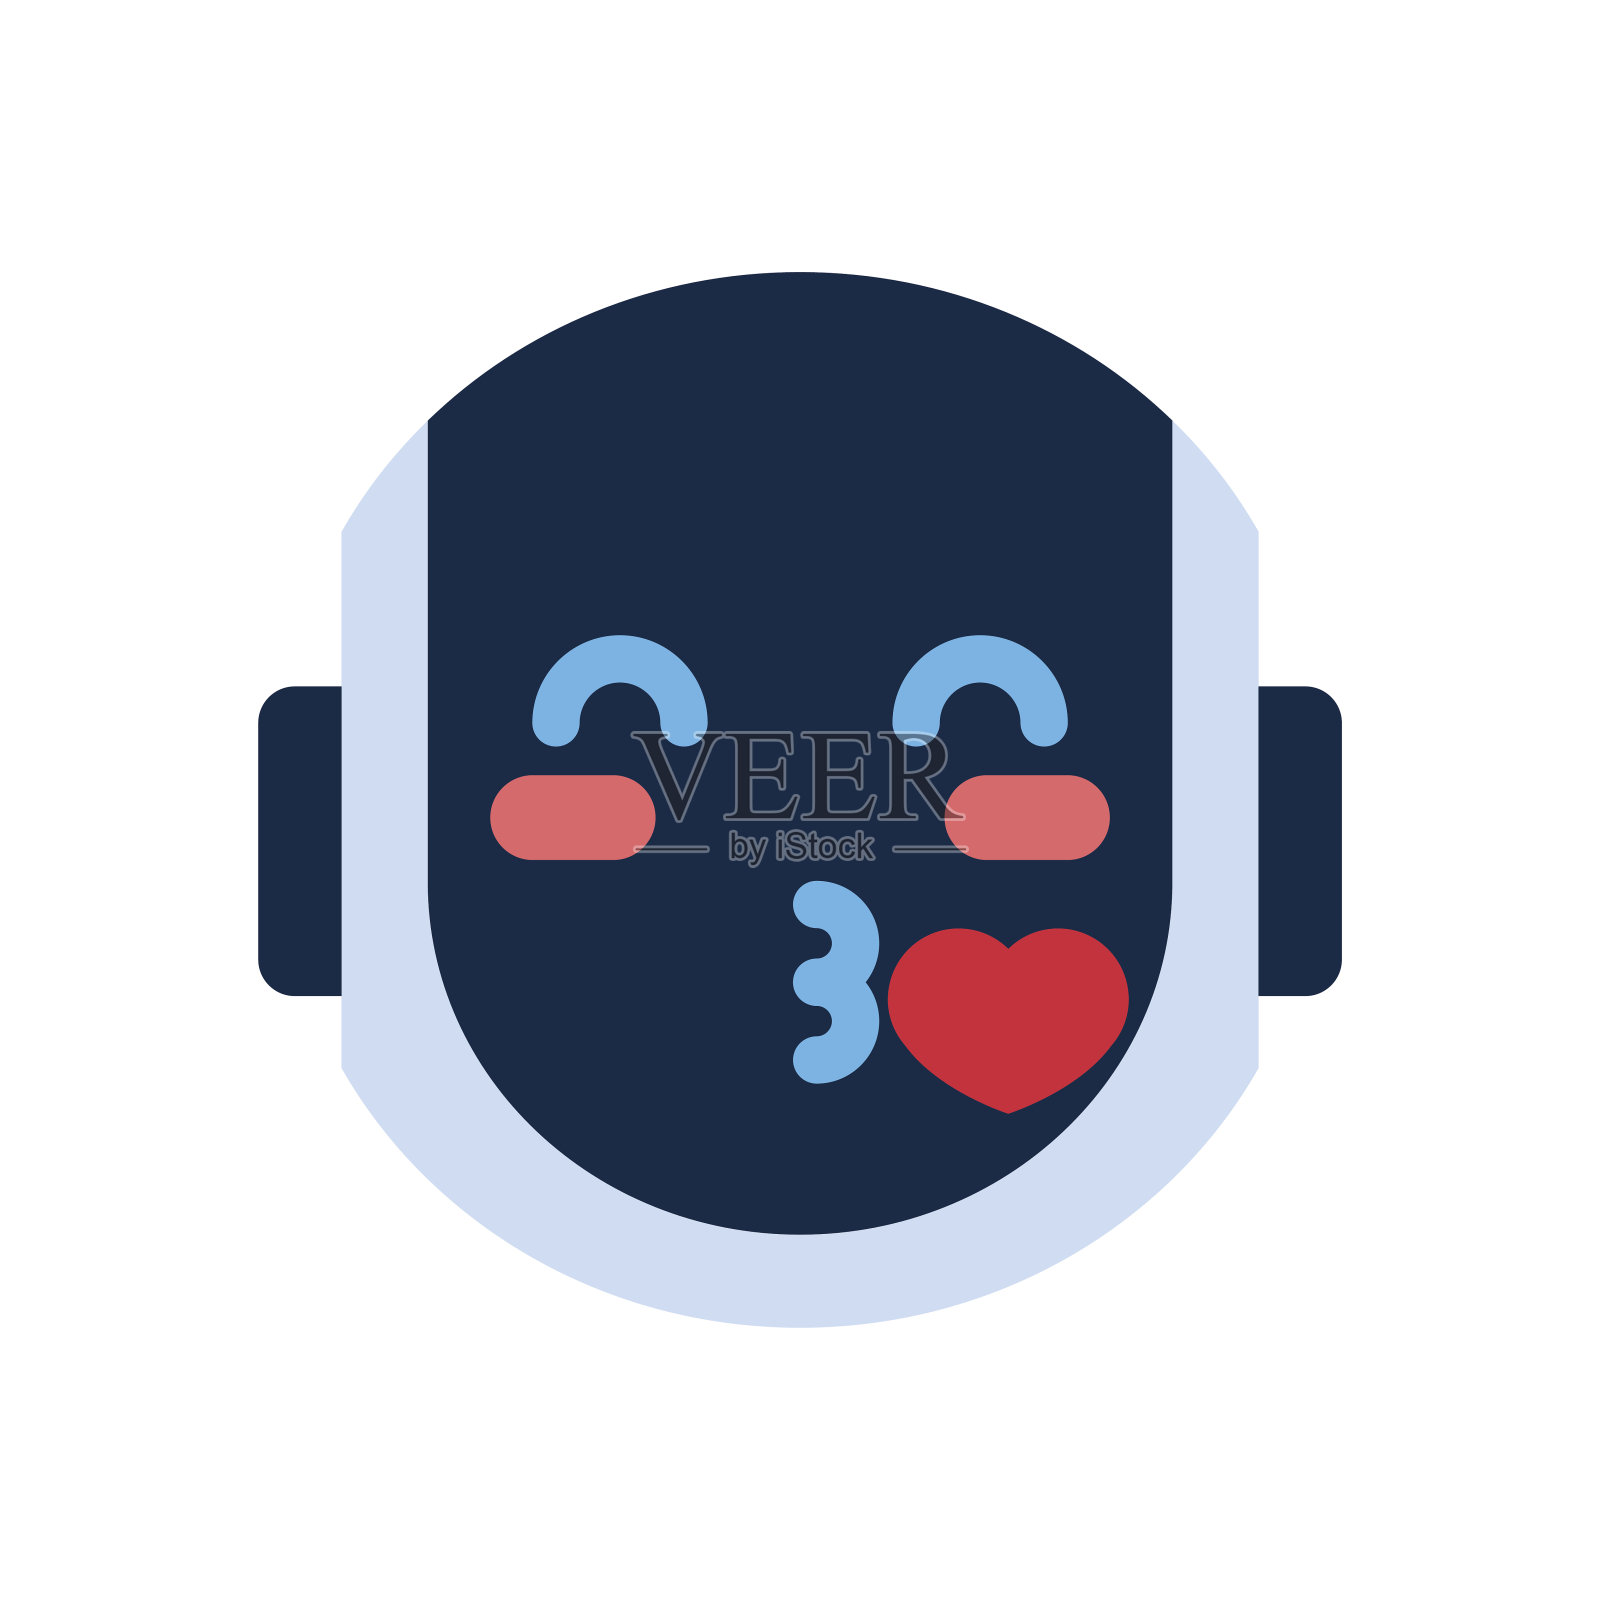 😘 飞吻 Emoji图片下载: 高清大图、动画图像和矢量图形 | EmojiAll